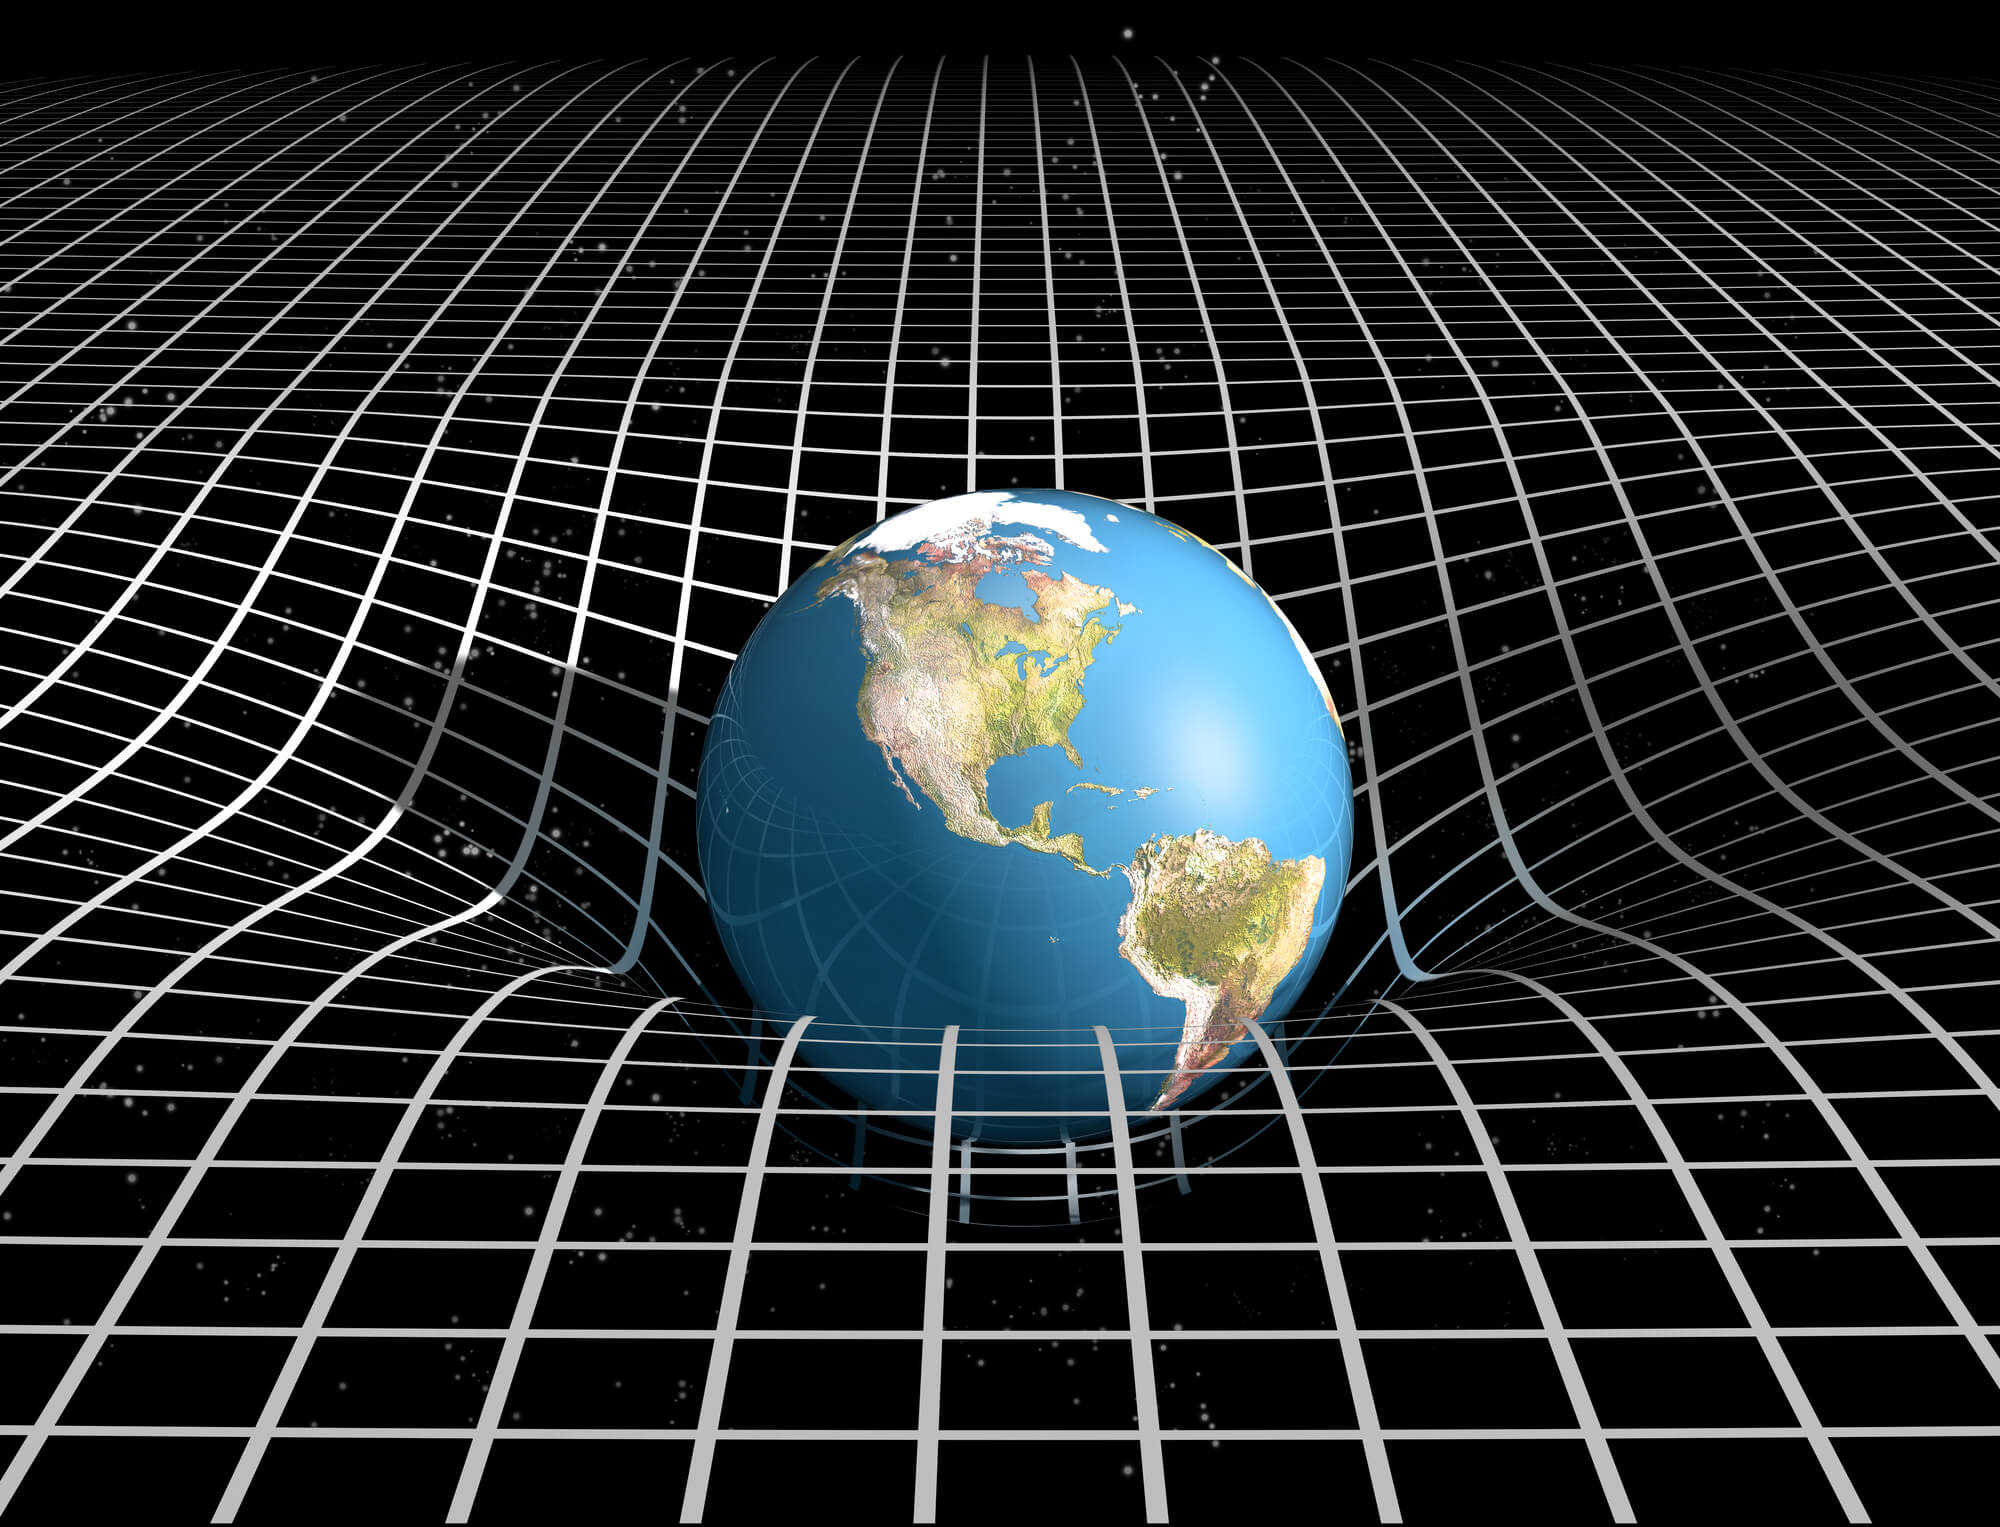 מארג המרחב זמן הקובע את הכבידה על פי תורת היחסות של איינשטיין.  <a href="https://depositphotos.com. ">המחשה: depositphotos.com</a>